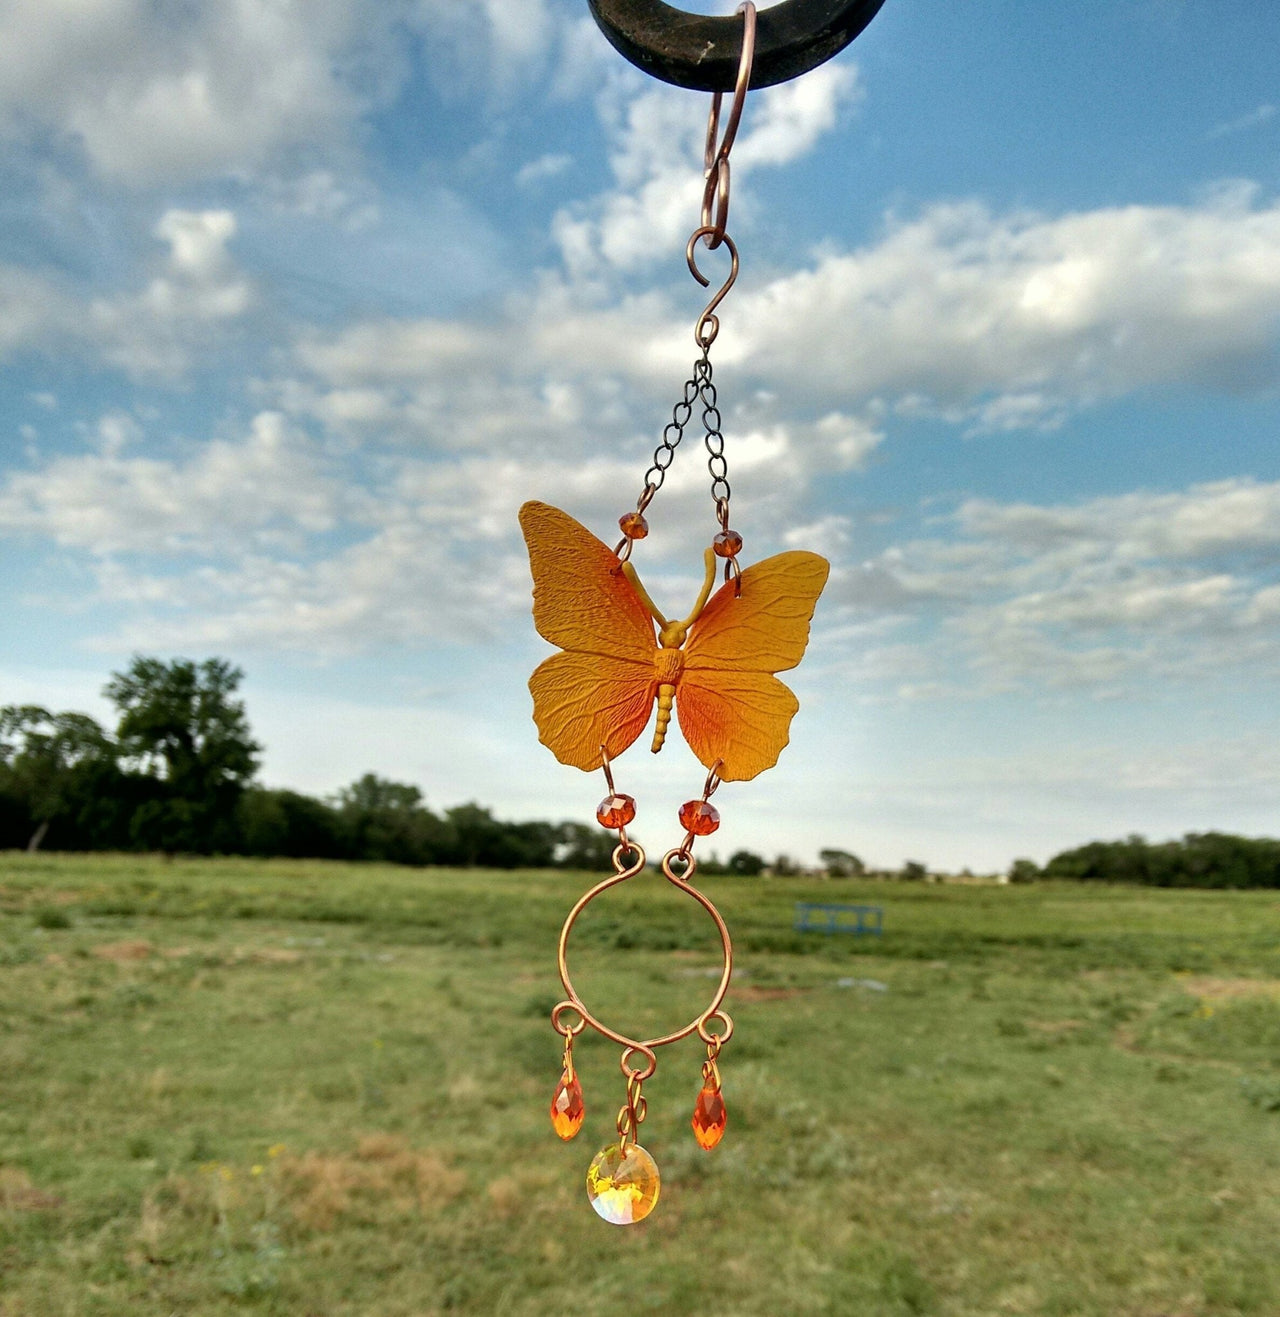 Handmade butterfly suncatcher